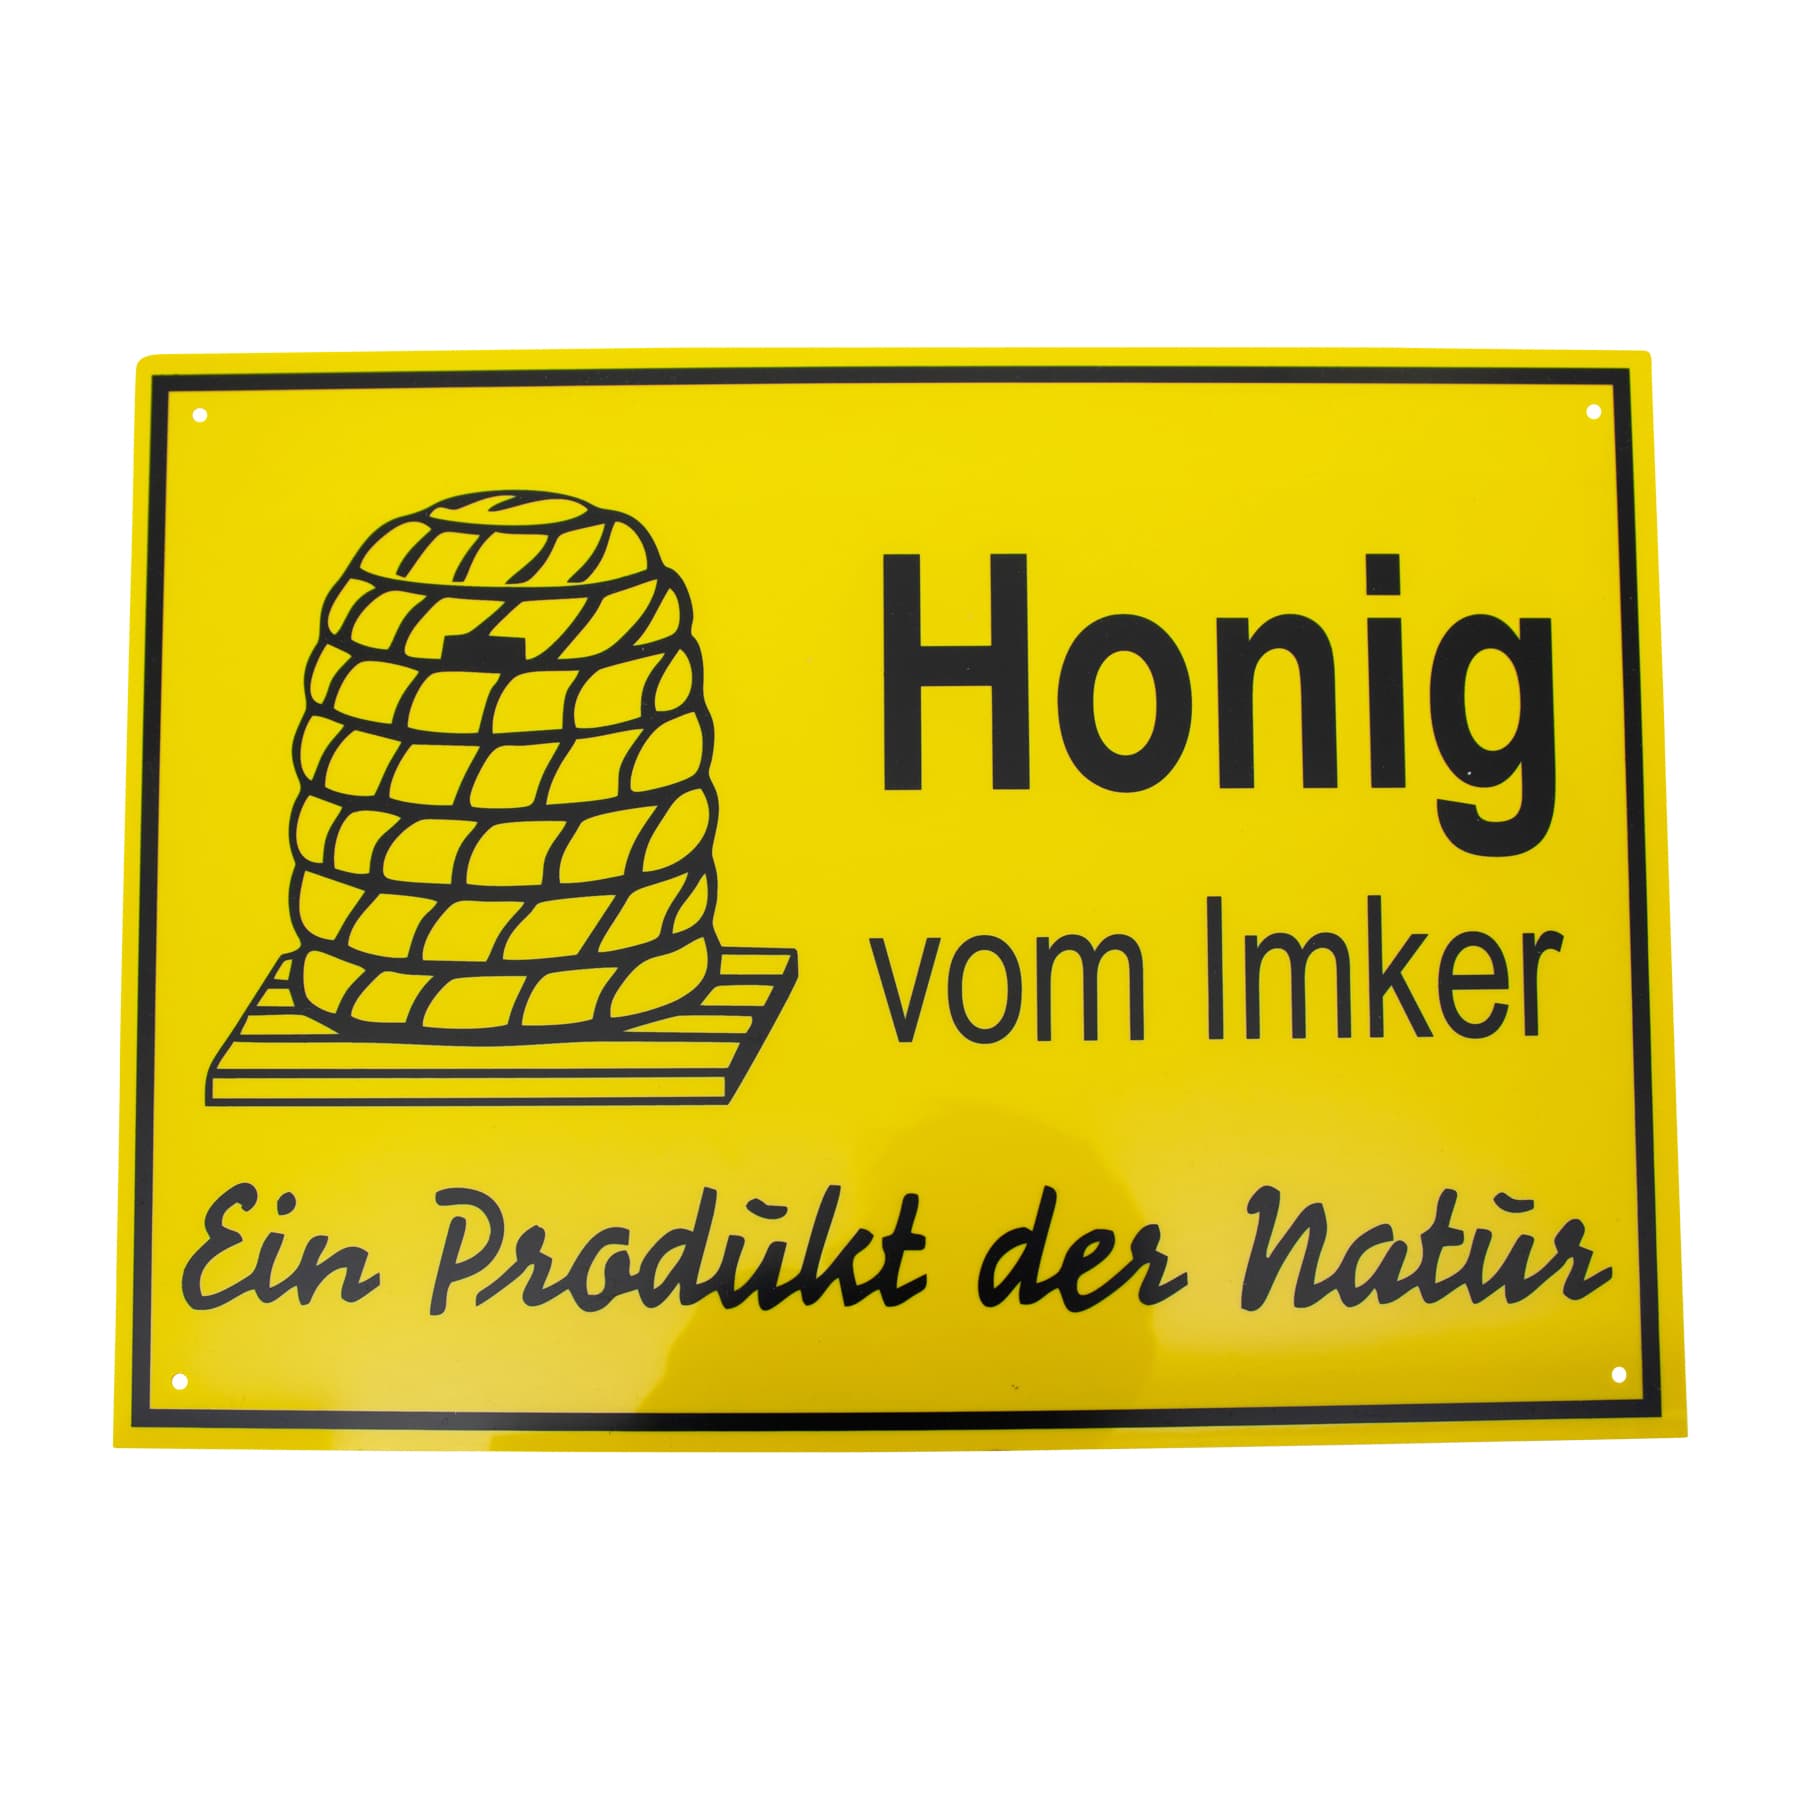 Ein Produkt der Natur" • drei Größen • gelb • PVC Werbeschild "Honig vom Imker 